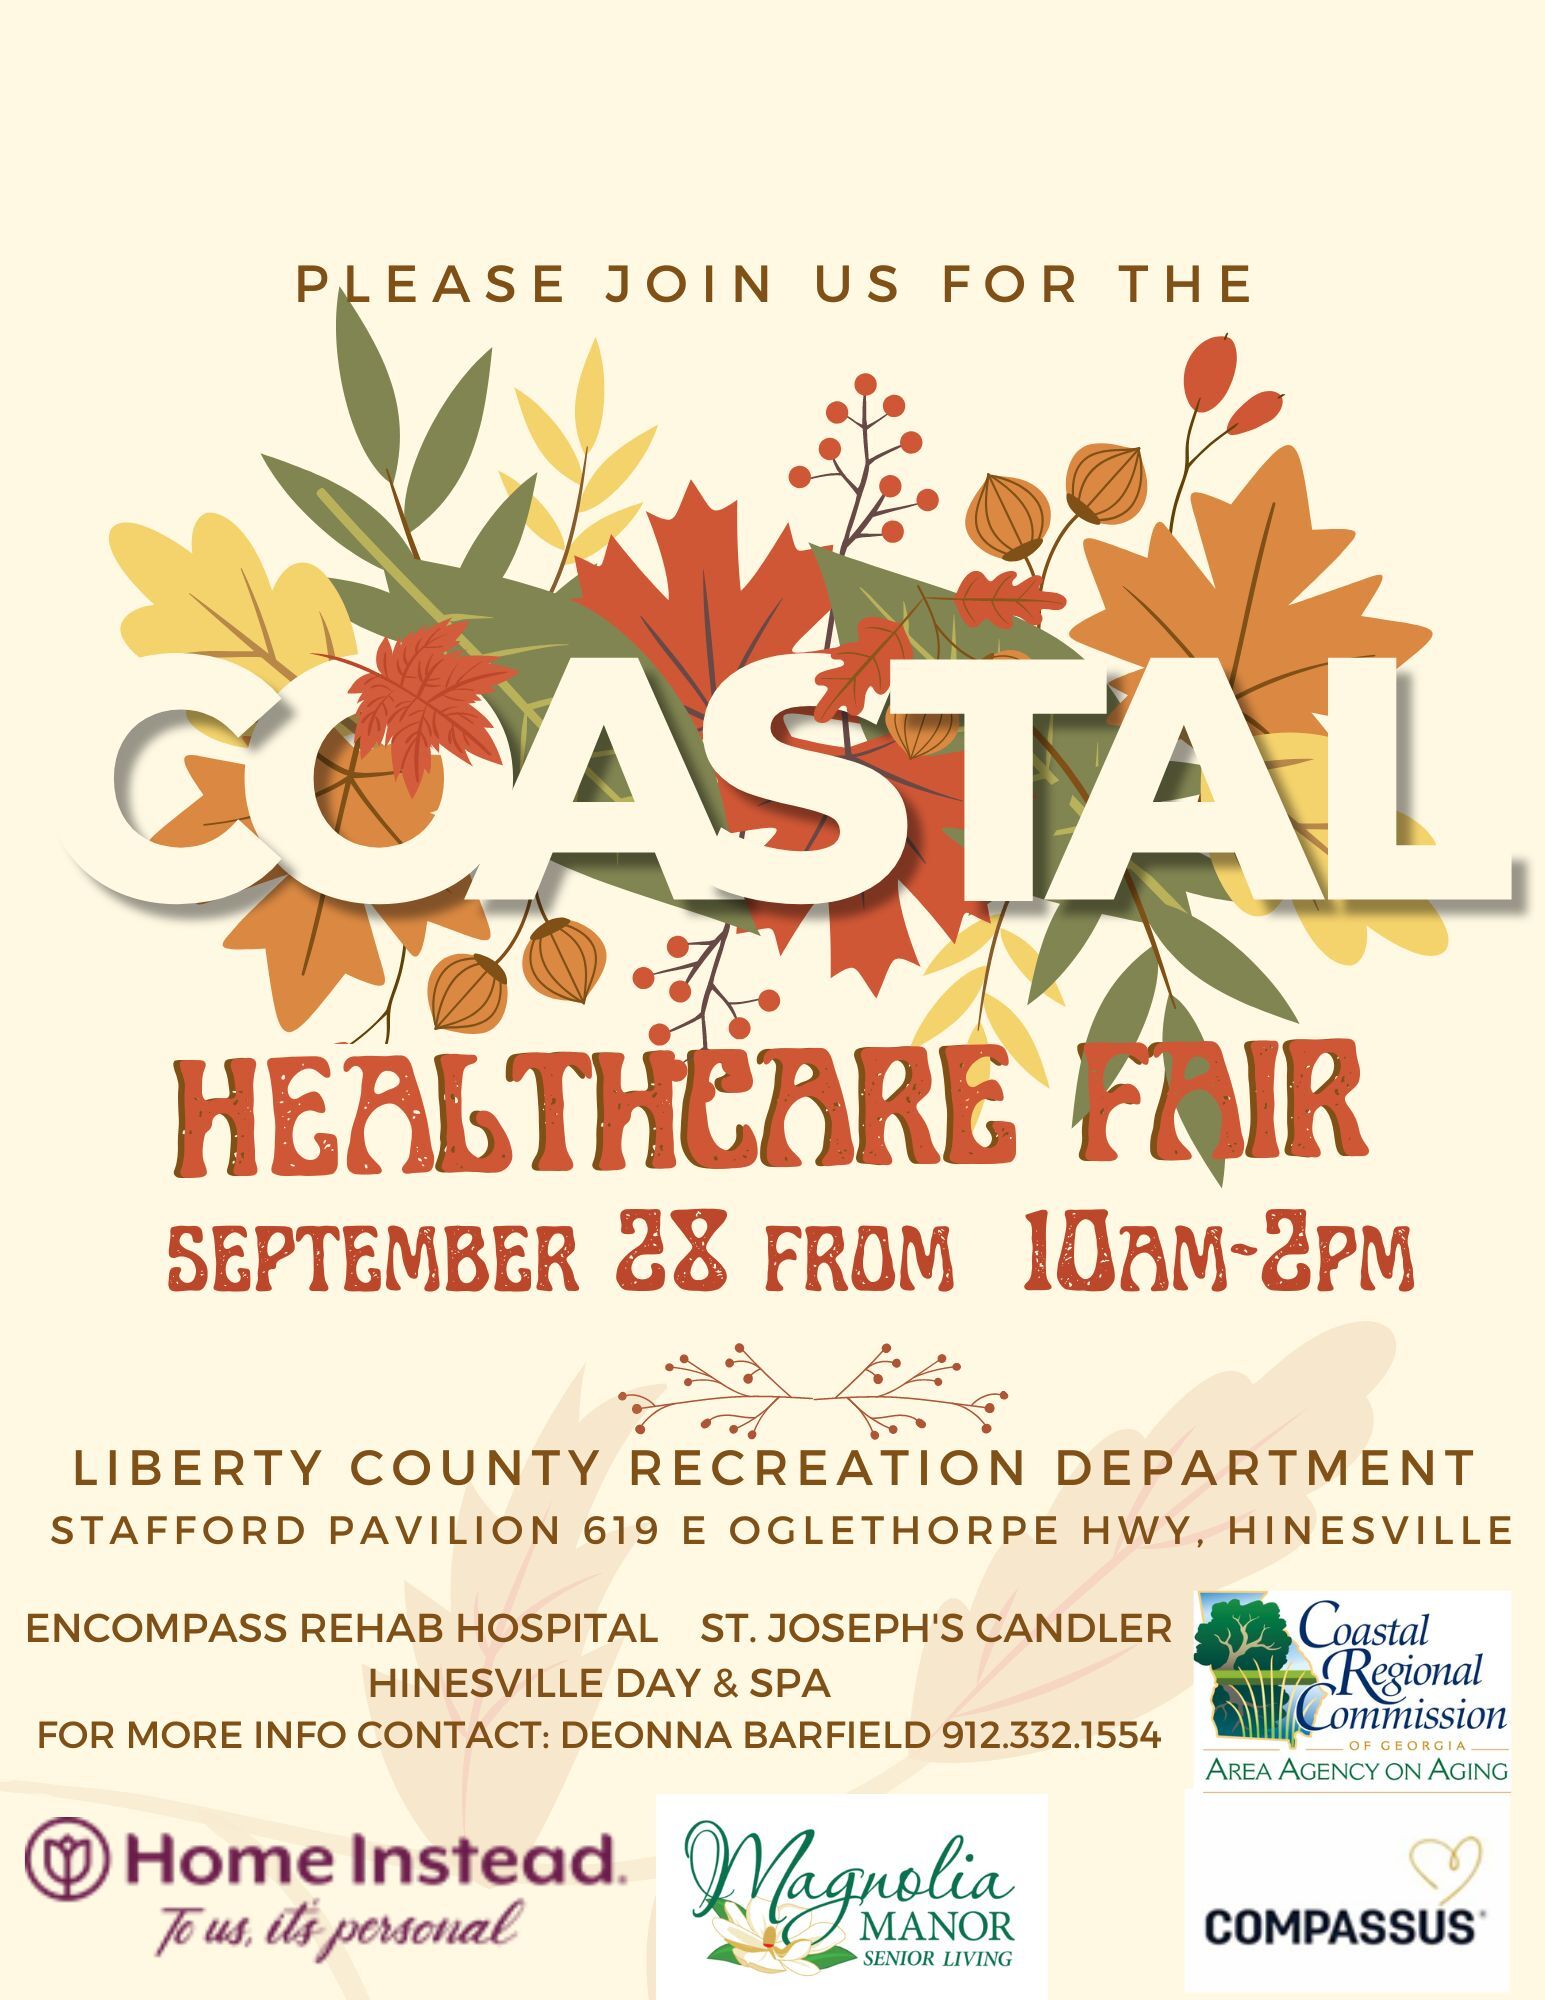 Flyer for Coastal Healthcare Fair